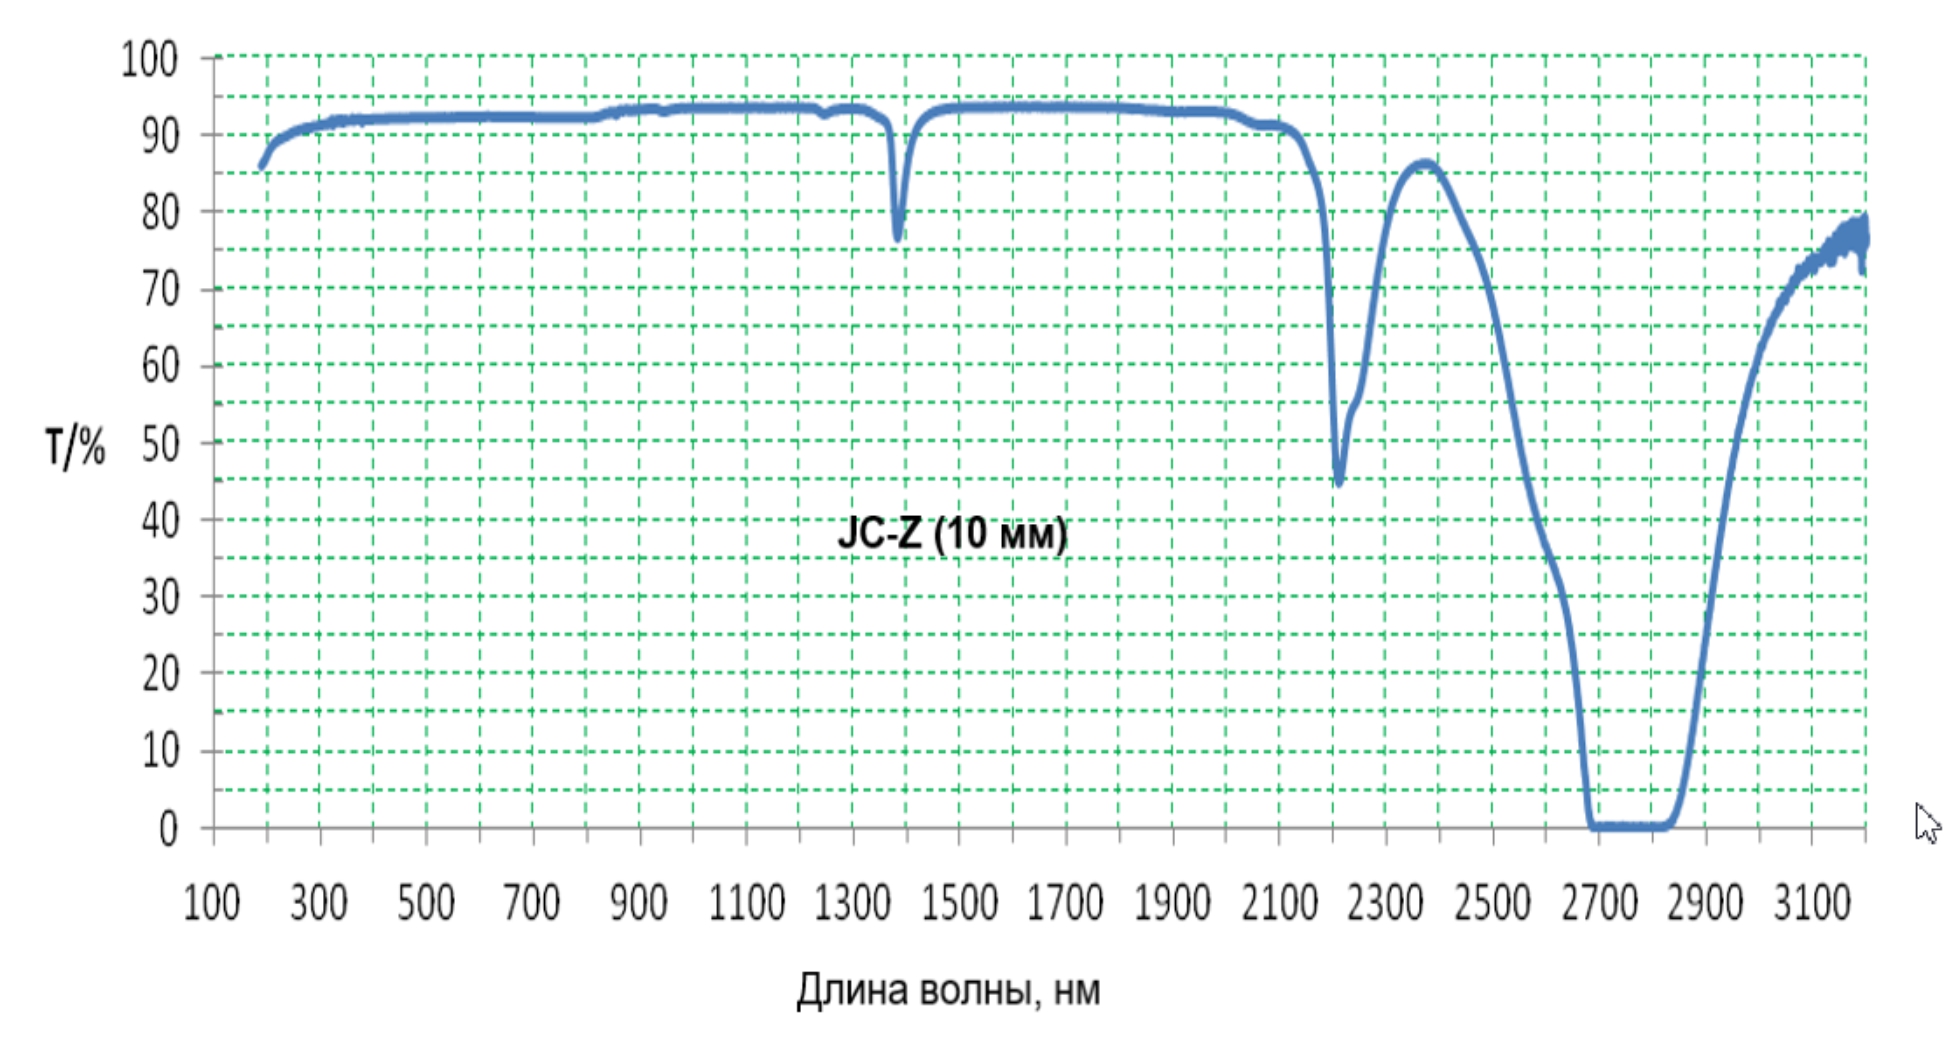 Пропускание JC-Z в области спектра 100-3200 нм